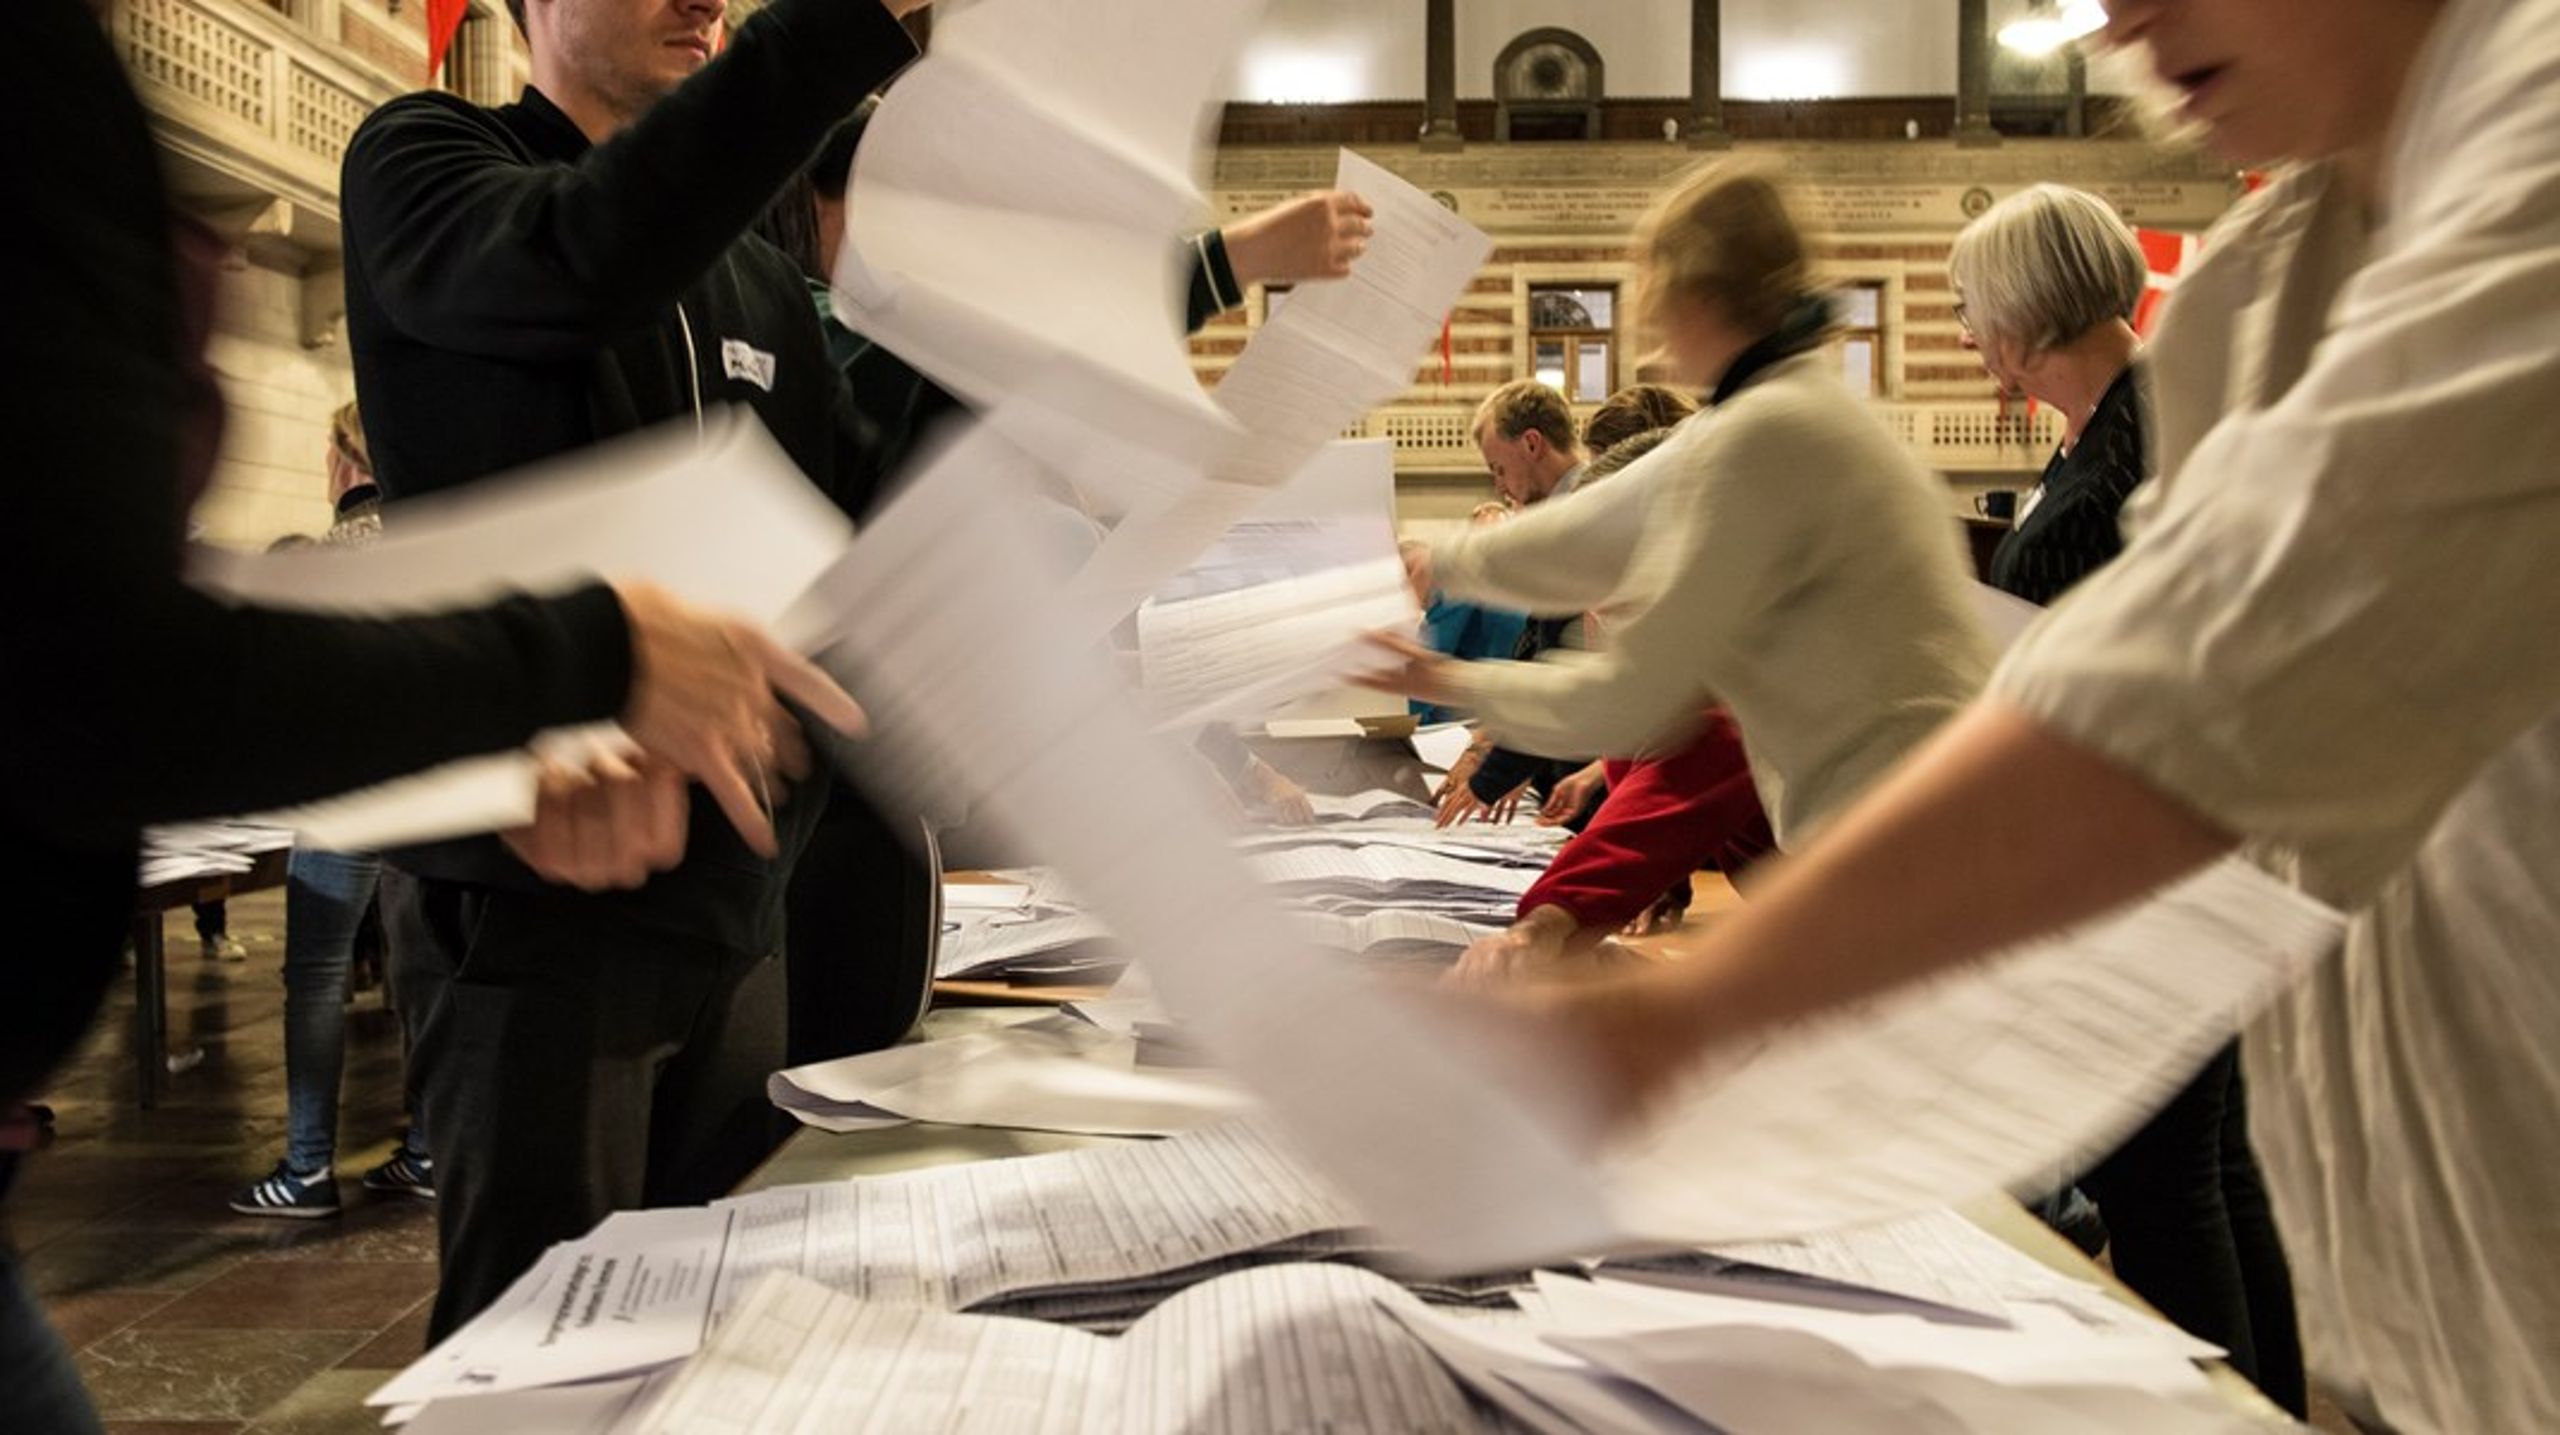 De store partier i kommunerne, Socialdemokratiet, Venstre og Konservative, blokerer for, at stemmeopgørelsesmetoden kan ændres, skriver Simon Emil Ammitzbøll-Bille.